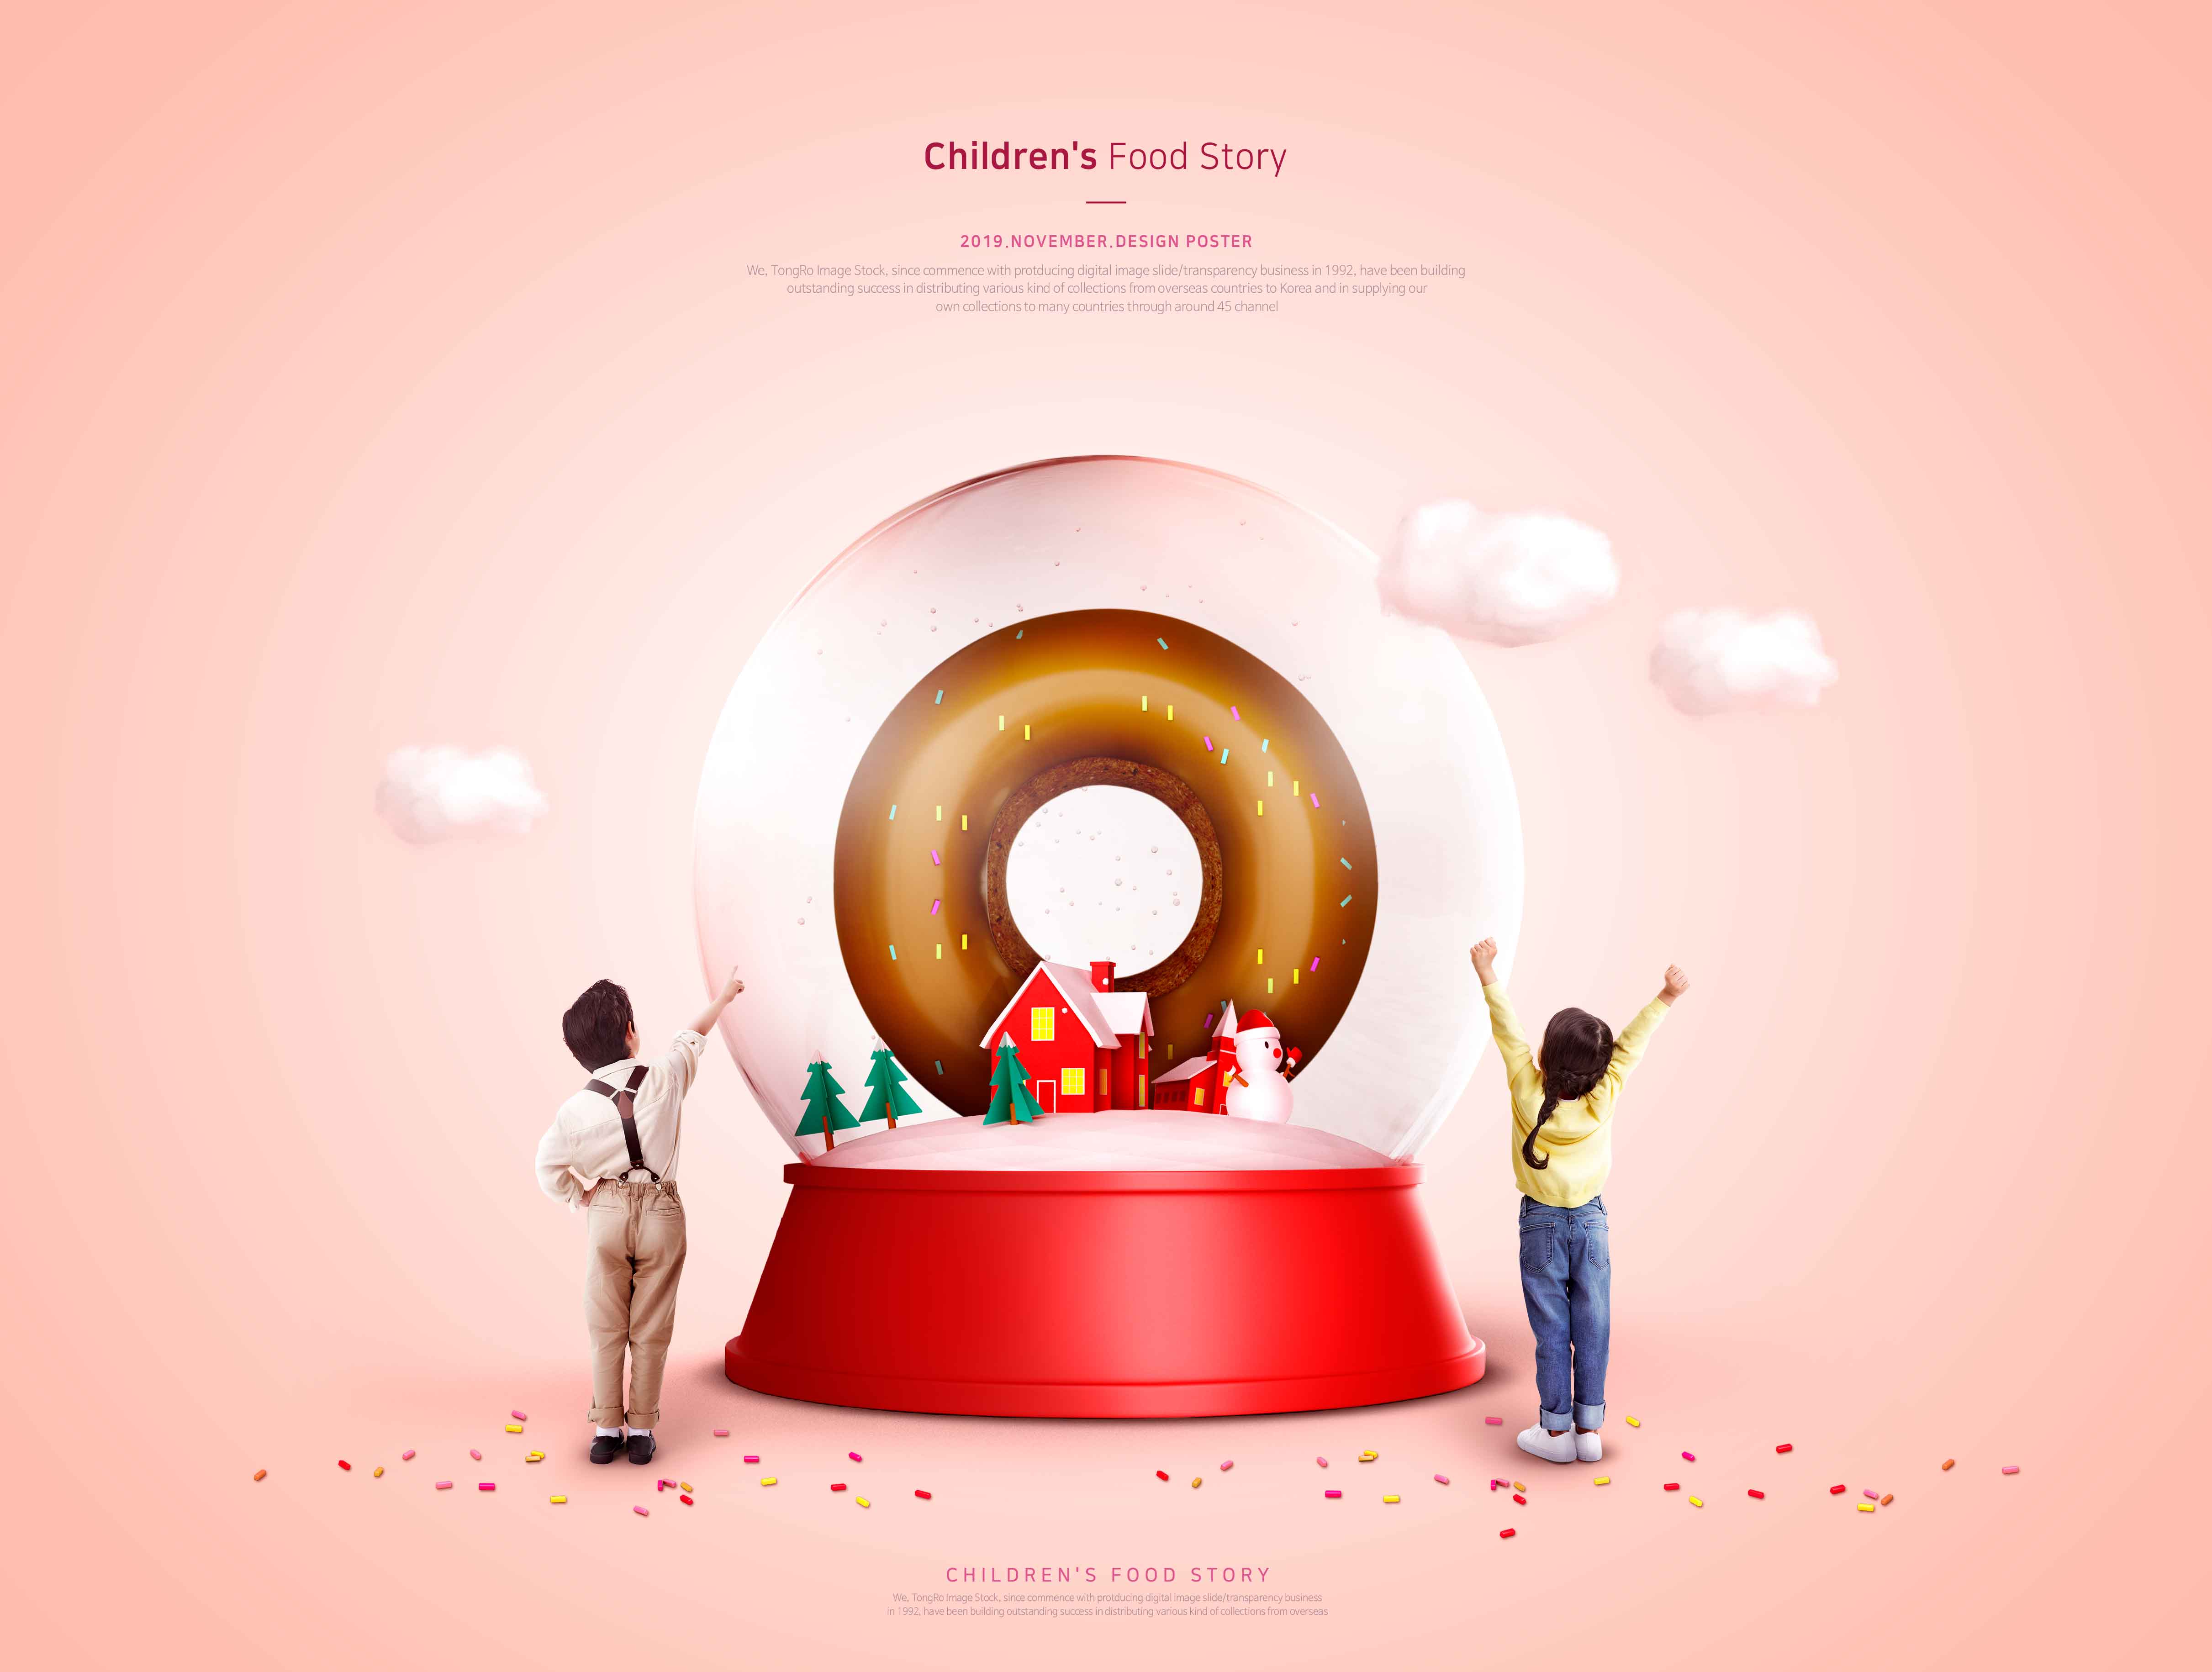 儿童食品故事甜甜圈美食推广海报PSD素材大洋岛精选模板插图